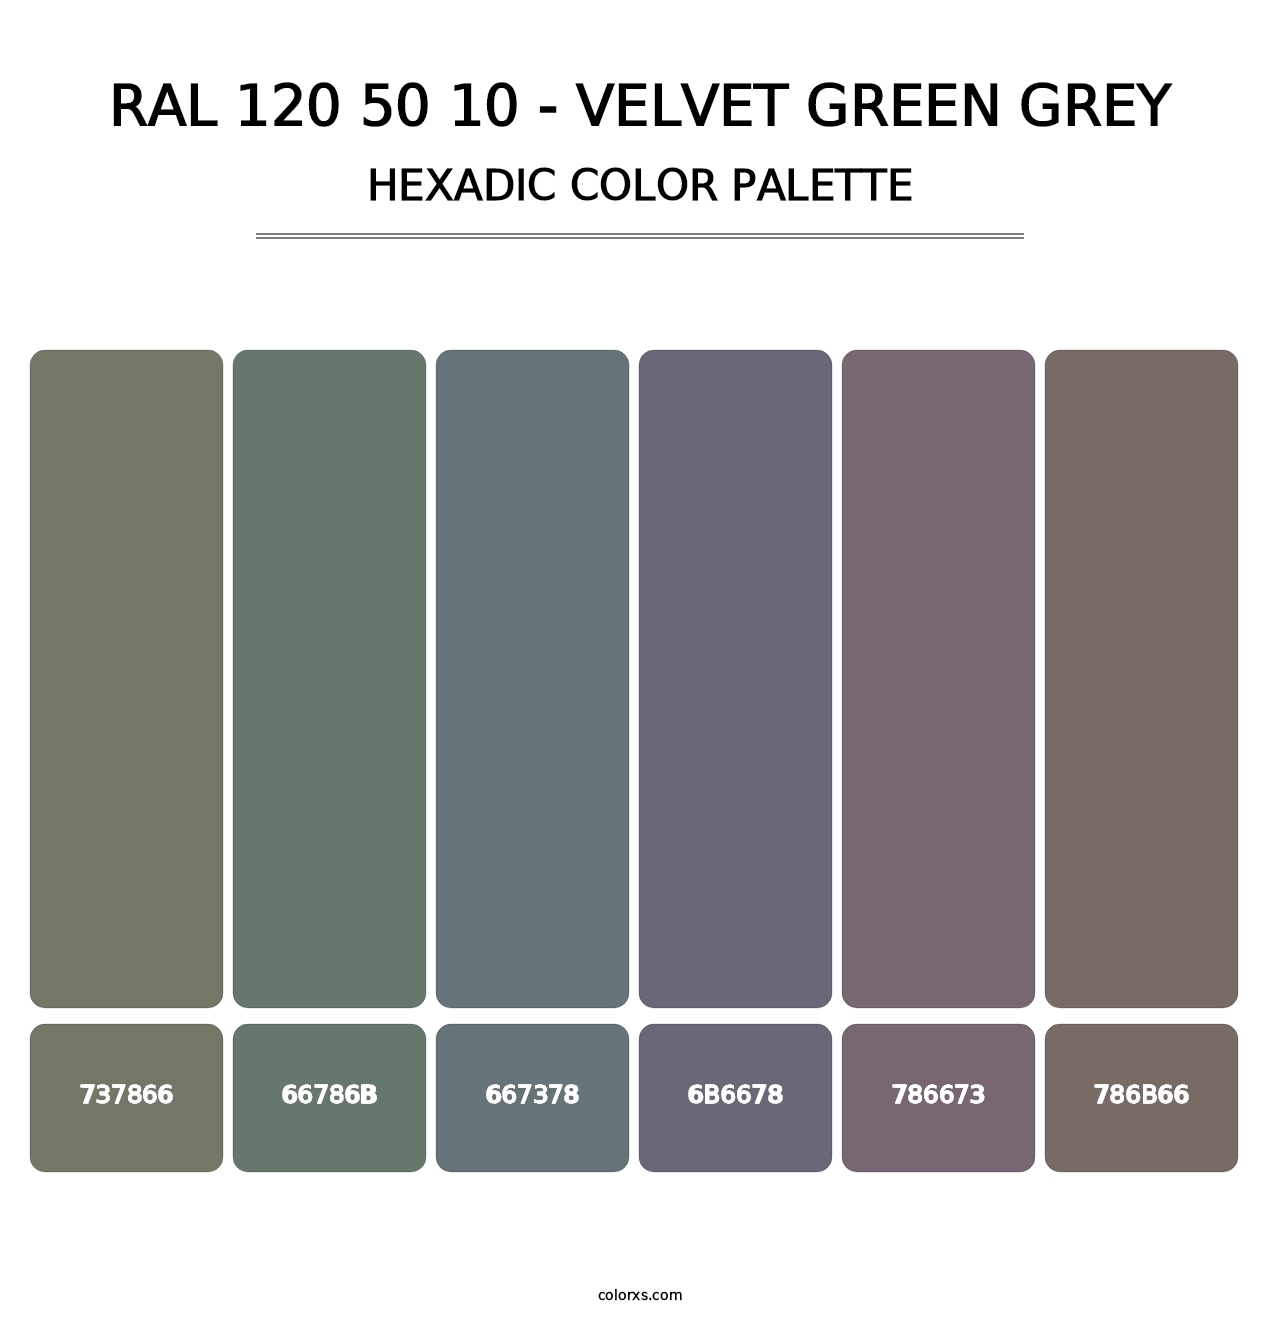 RAL 120 50 10 - Velvet Green Grey - Hexadic Color Palette